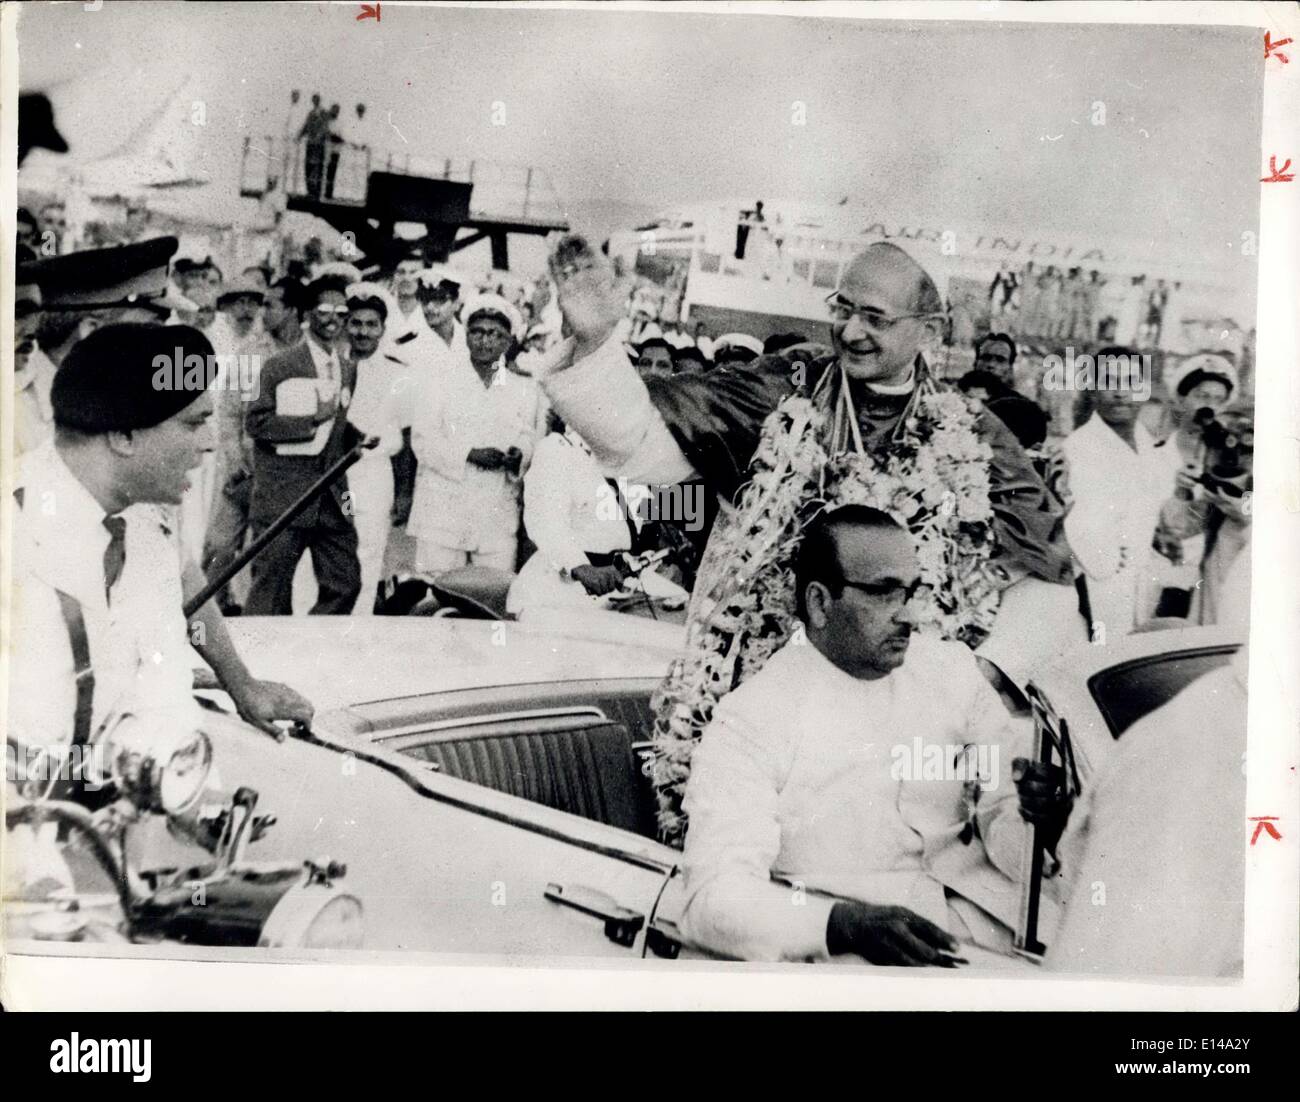 17. April 2012 - Papst Paul In Indien: bei seiner Ankunft am Flughafen Papst Paul VI. Bowley erkennt die Grüße von den großen Massen wünschen Paclued Flughafen. Stockfoto